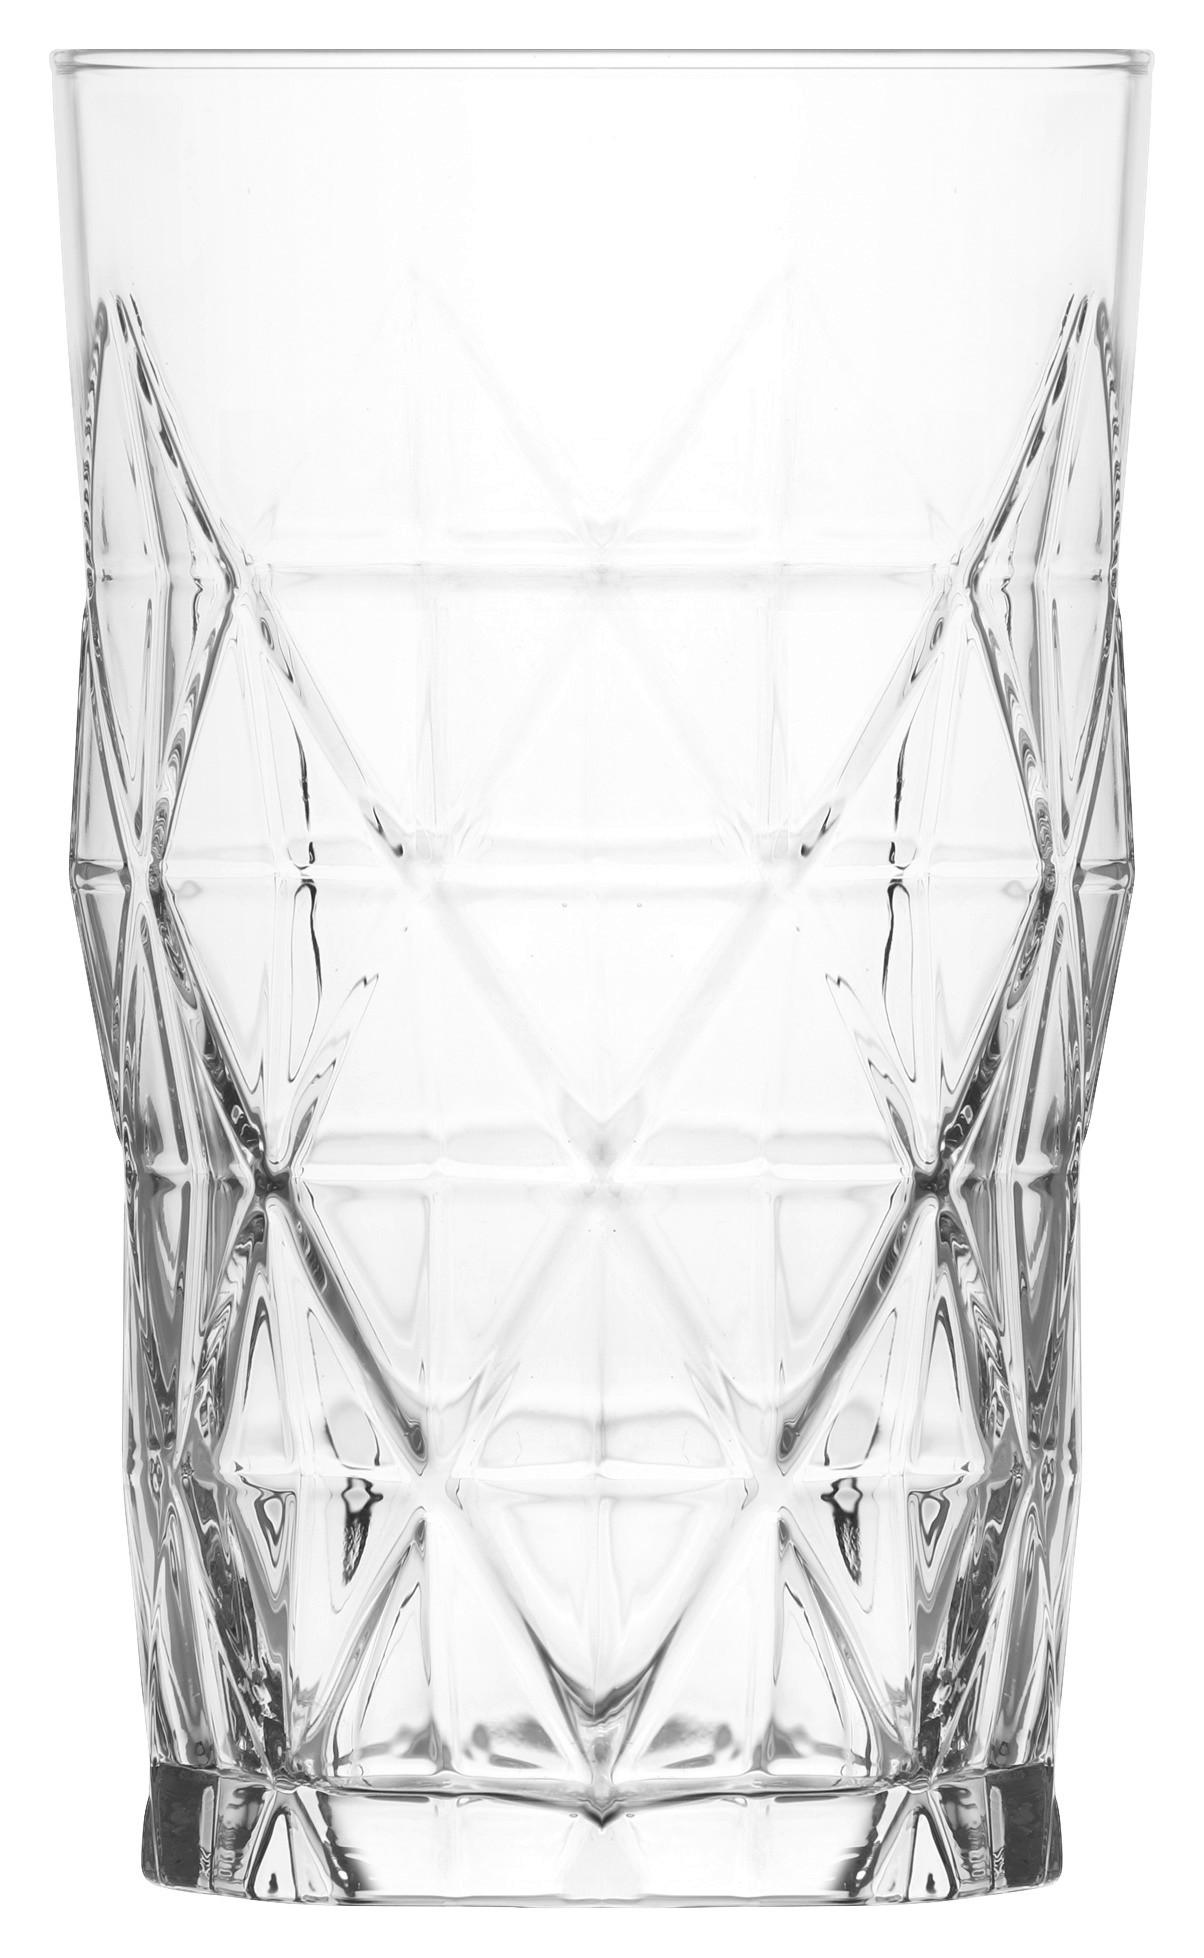 Pohár Na Longdrink Skye - číra, Konvenčný, sklo (8,1/13,5cm) - Modern Living